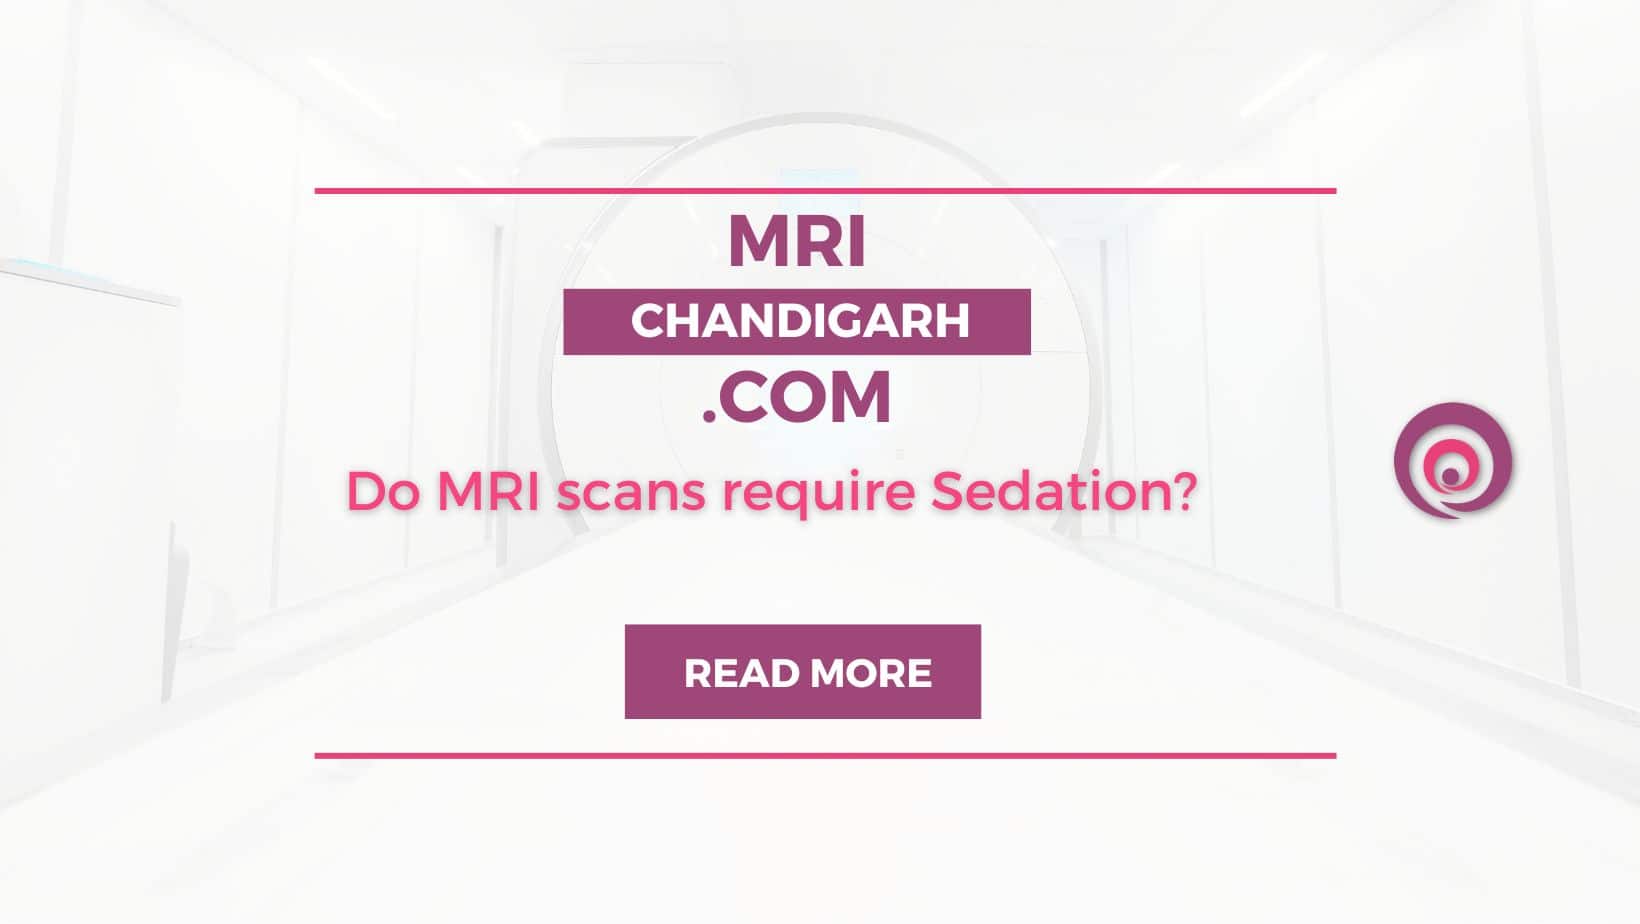 Do MRI scans require Sedation?